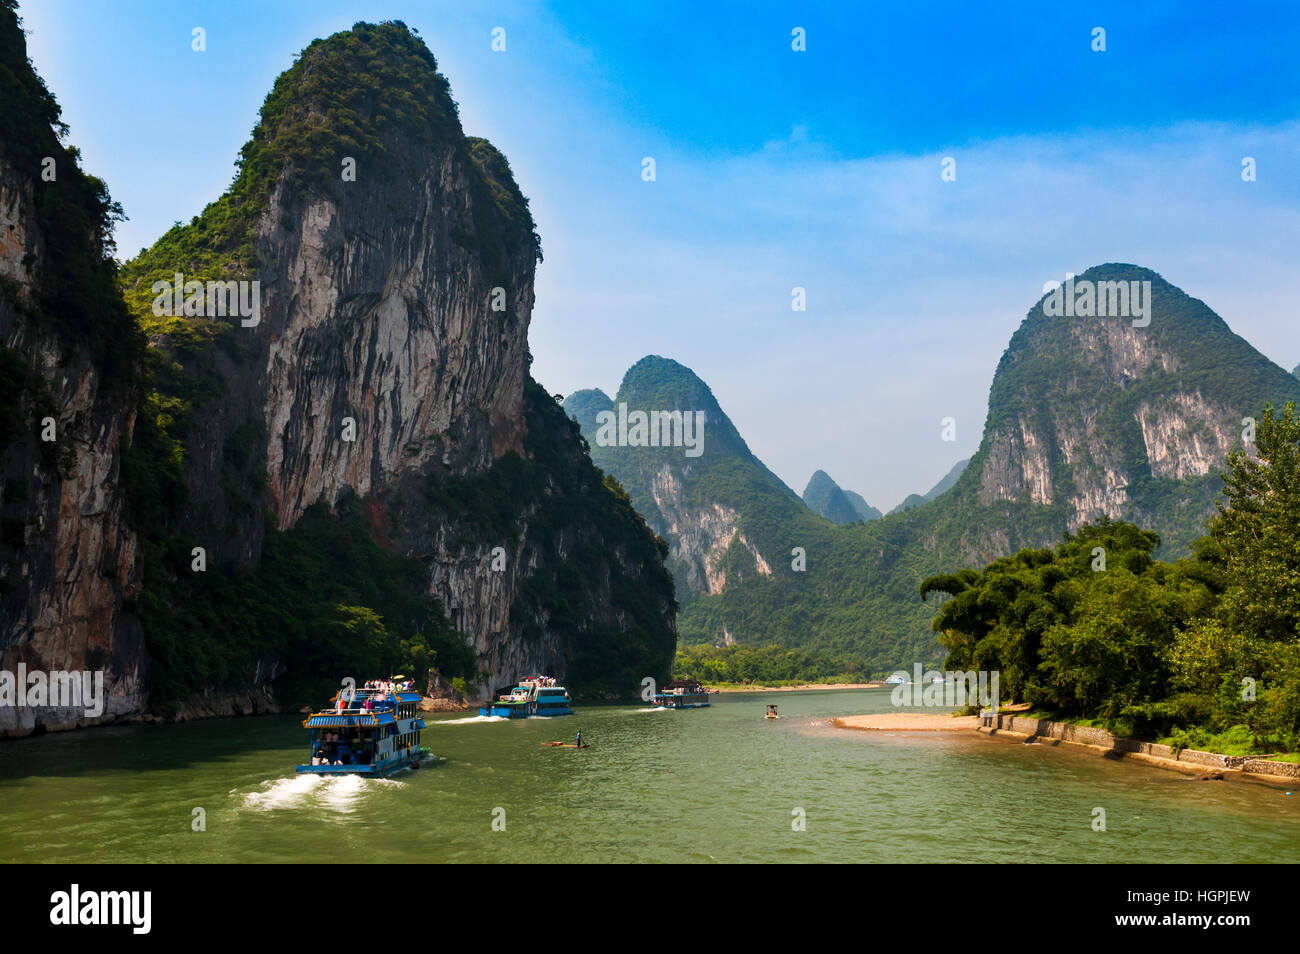 Bateaux à passagers et des radeaux dans la rivière Li dans la région de l'Guagxi en Chine ; Concept pour voyager en Chine Banque D'Images